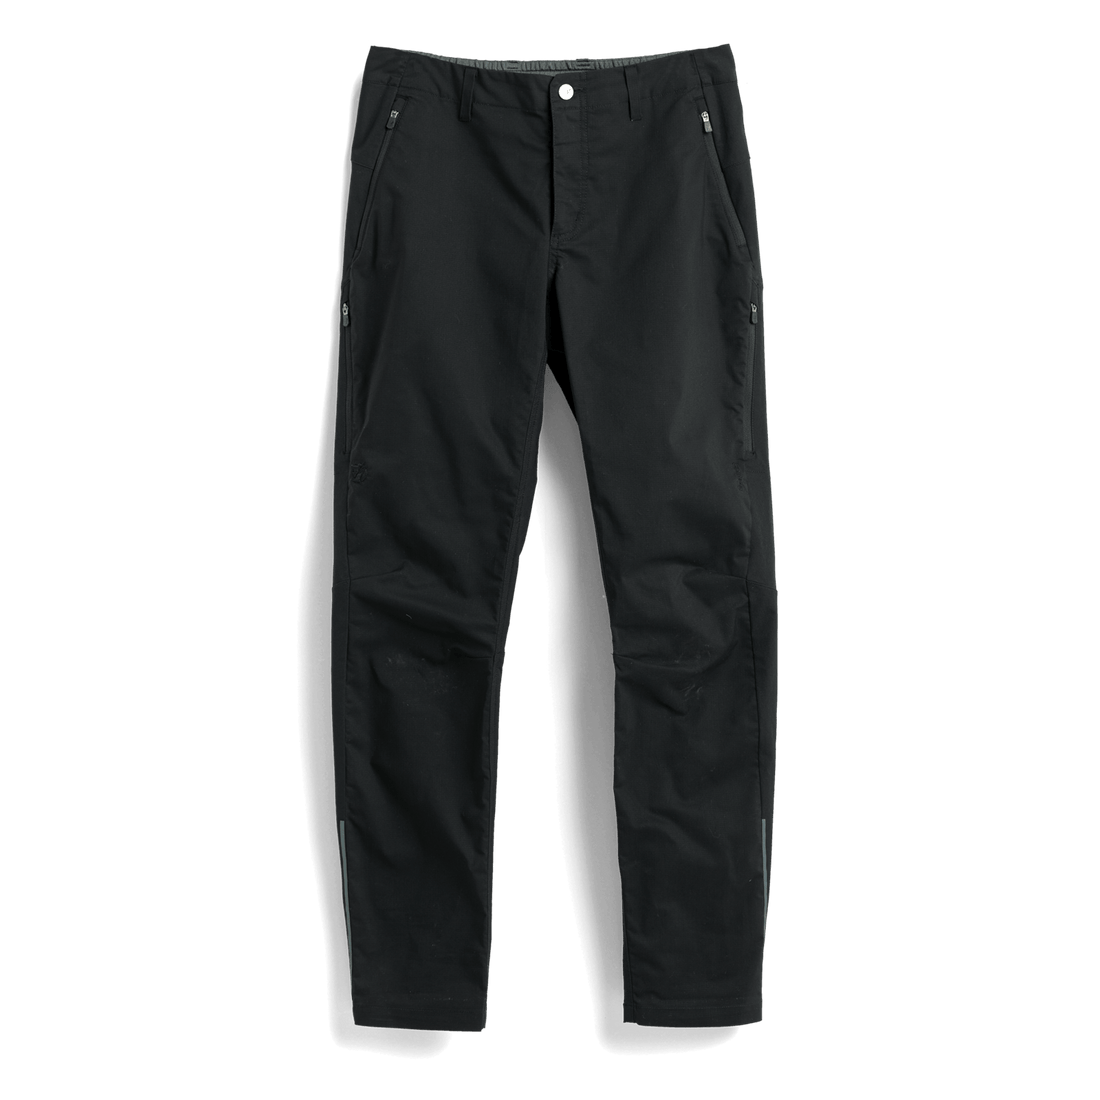 F&F Mens Green Cotton Cargo Trousers Size 34 in L32 in Regular Drawstr –  Preworn Ltd